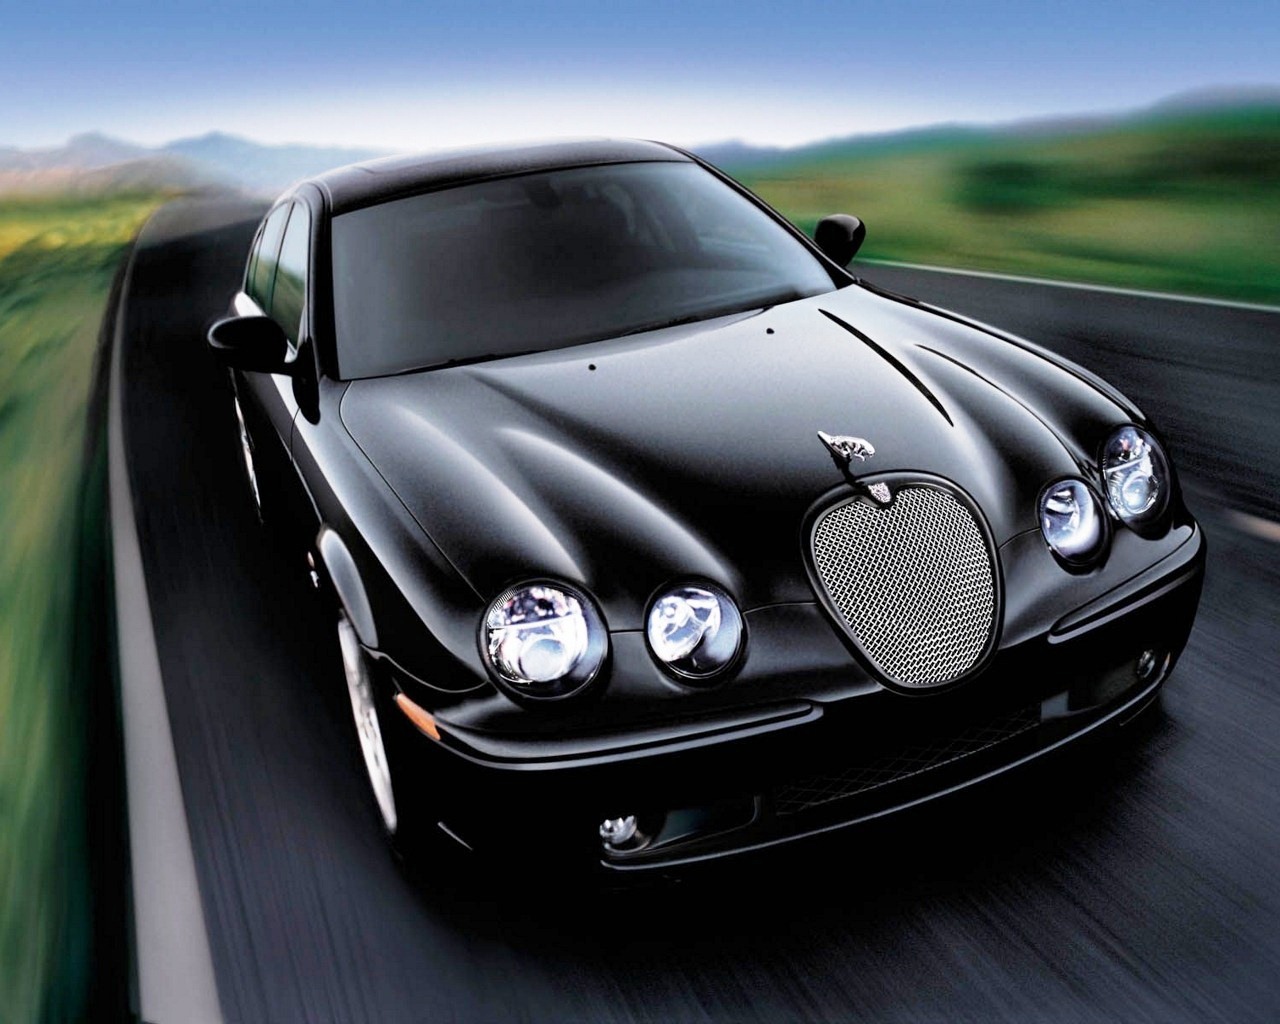 http://4.bp.blogspot.com/-lBdFqUjuwwE/T6HxXTRHn_I/AAAAAAAABJs/miA6PWxf7X0/s1600/Jaguar_HD_Car_Wallpaper_Blu_Ray_1080p+%252817%2529.jpg